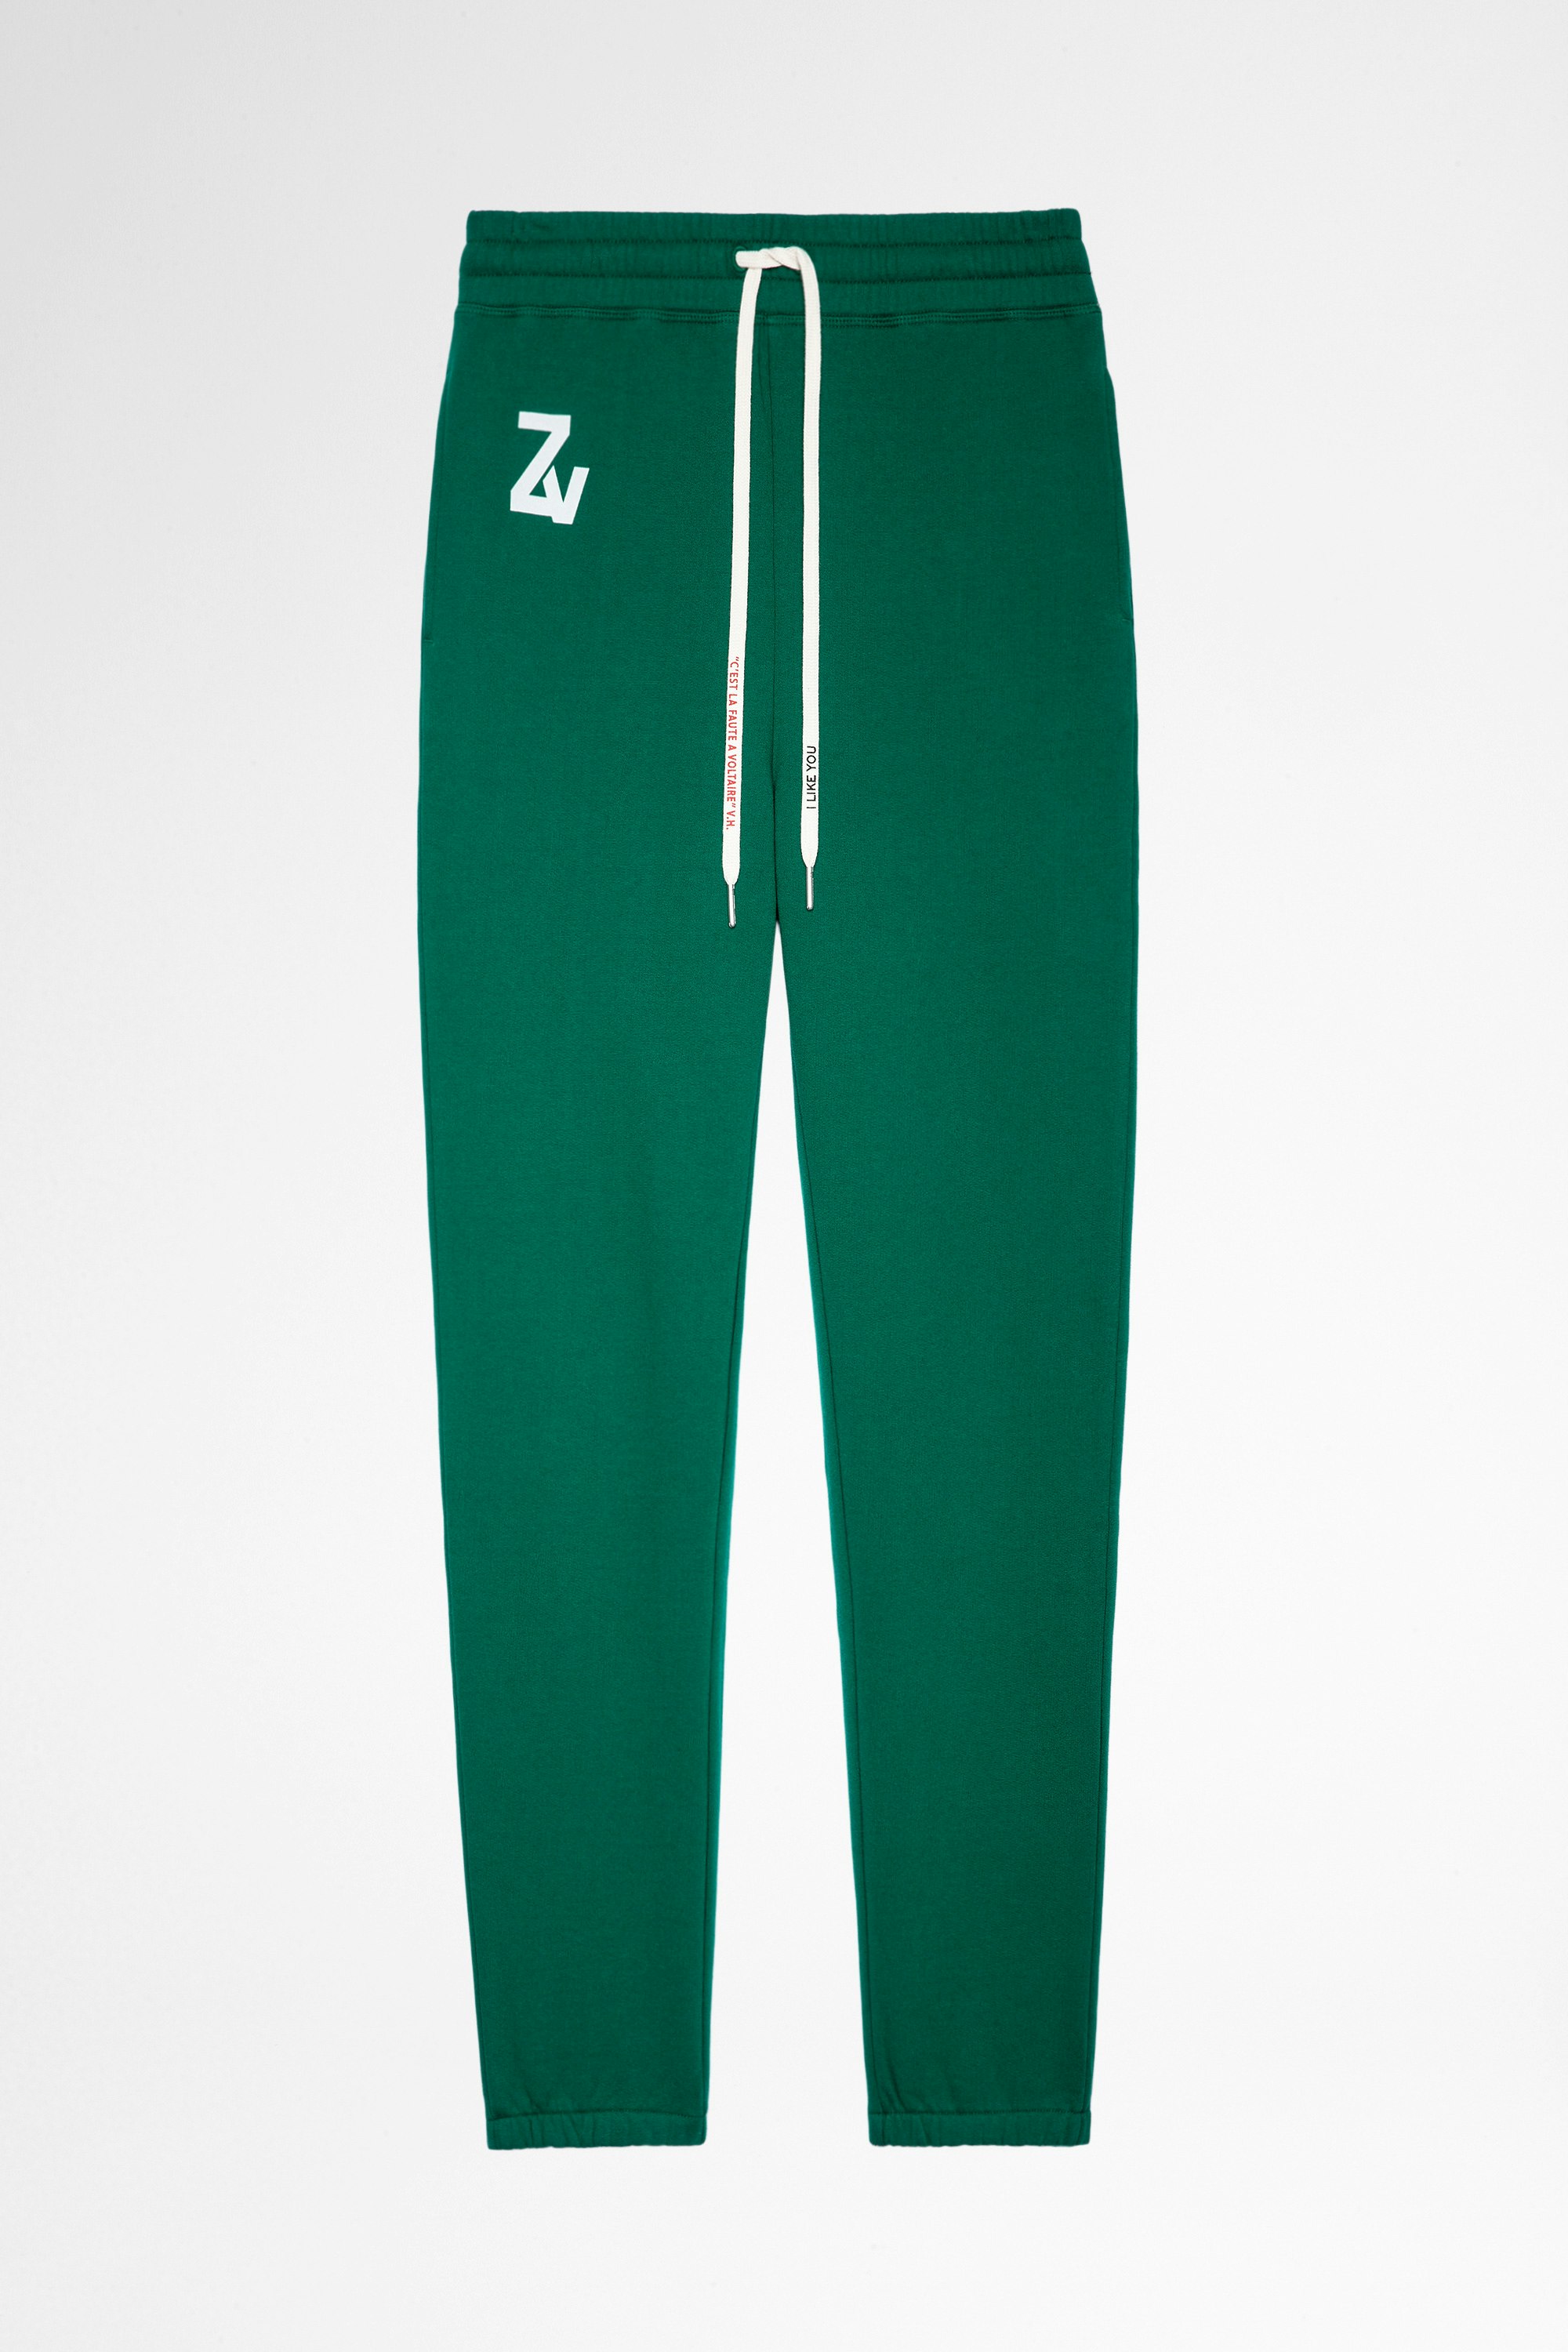 Pantalon De Jogging Steevy Pantalon de jogging en coton vert Femme. Ce produit est certifié GOTS et fait à partir de fibres issues de l’agriculture biologique.